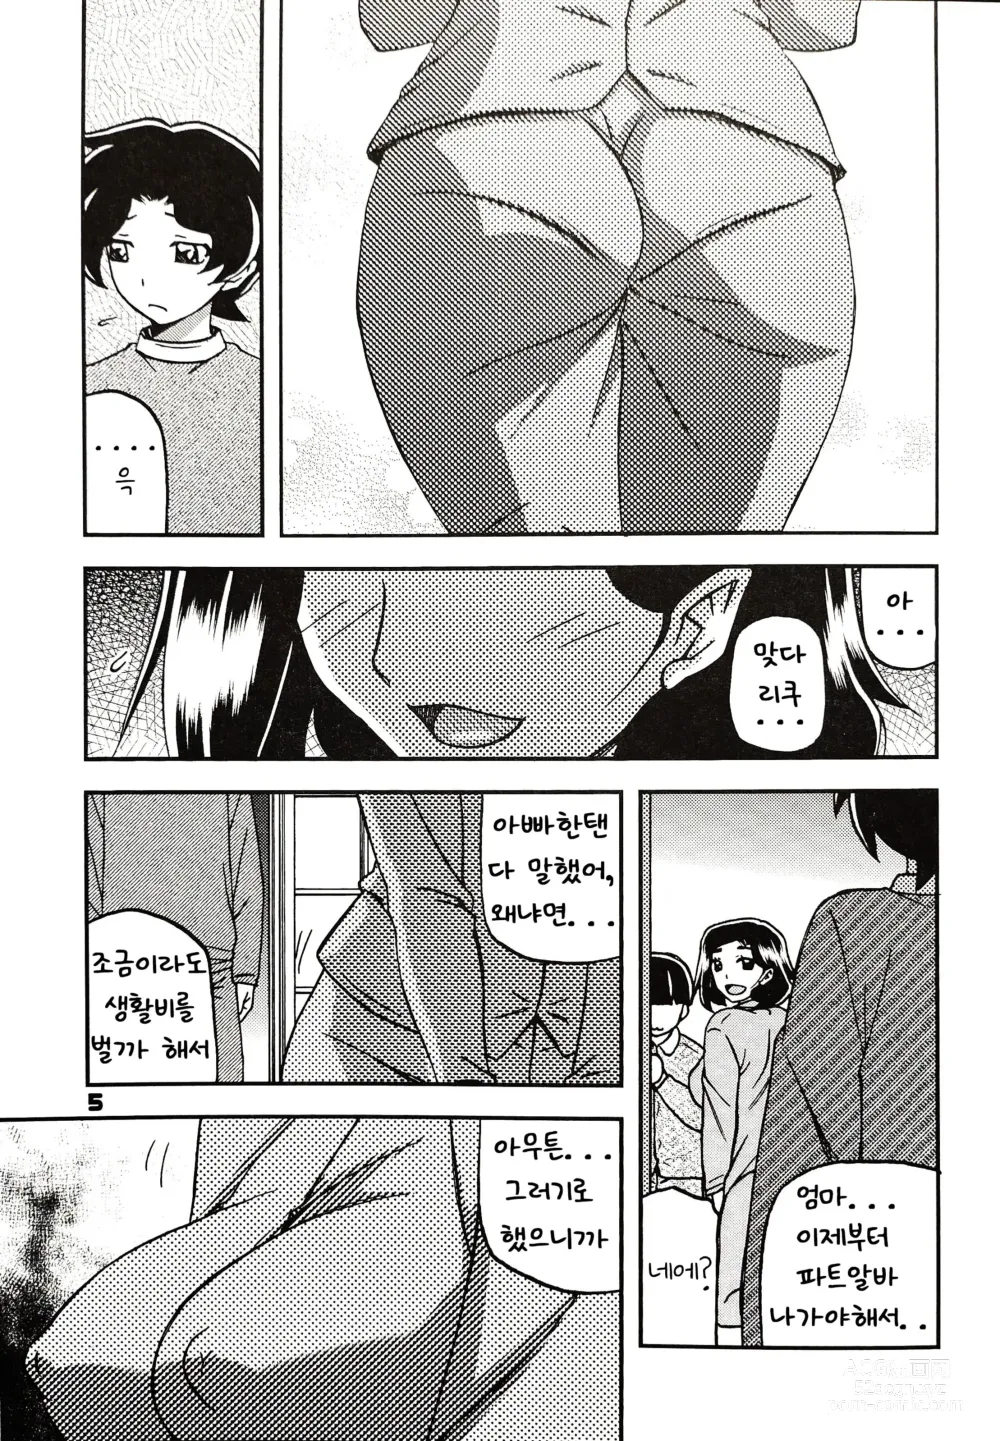 Page 4 of doujinshi Akebi no Mi - Misora AFTER